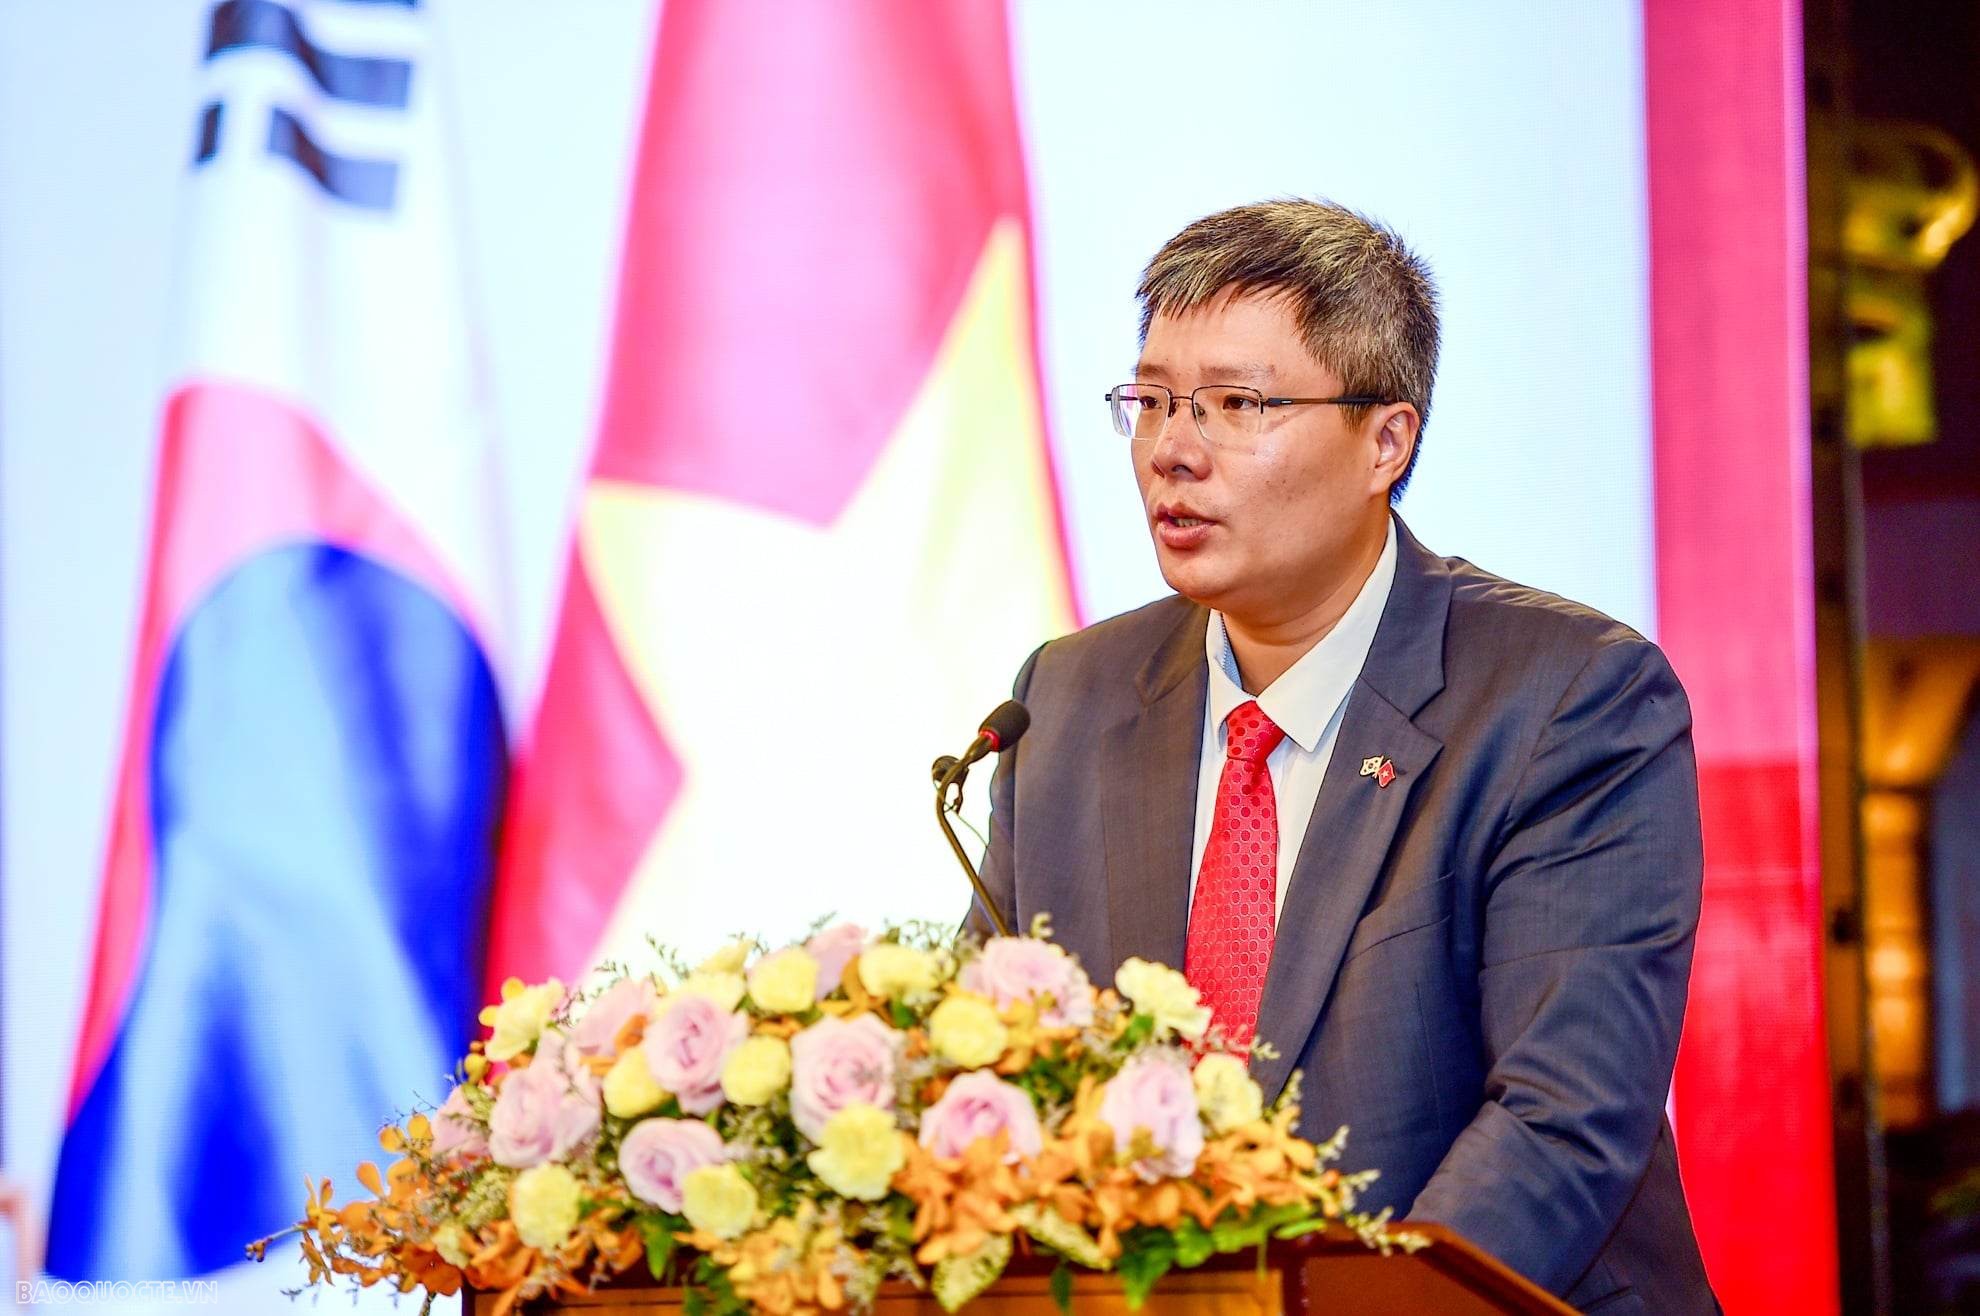 Giới doanh nhân nêu giải pháp nâng tầm trí tuệ Việt tại đất nước phát triển